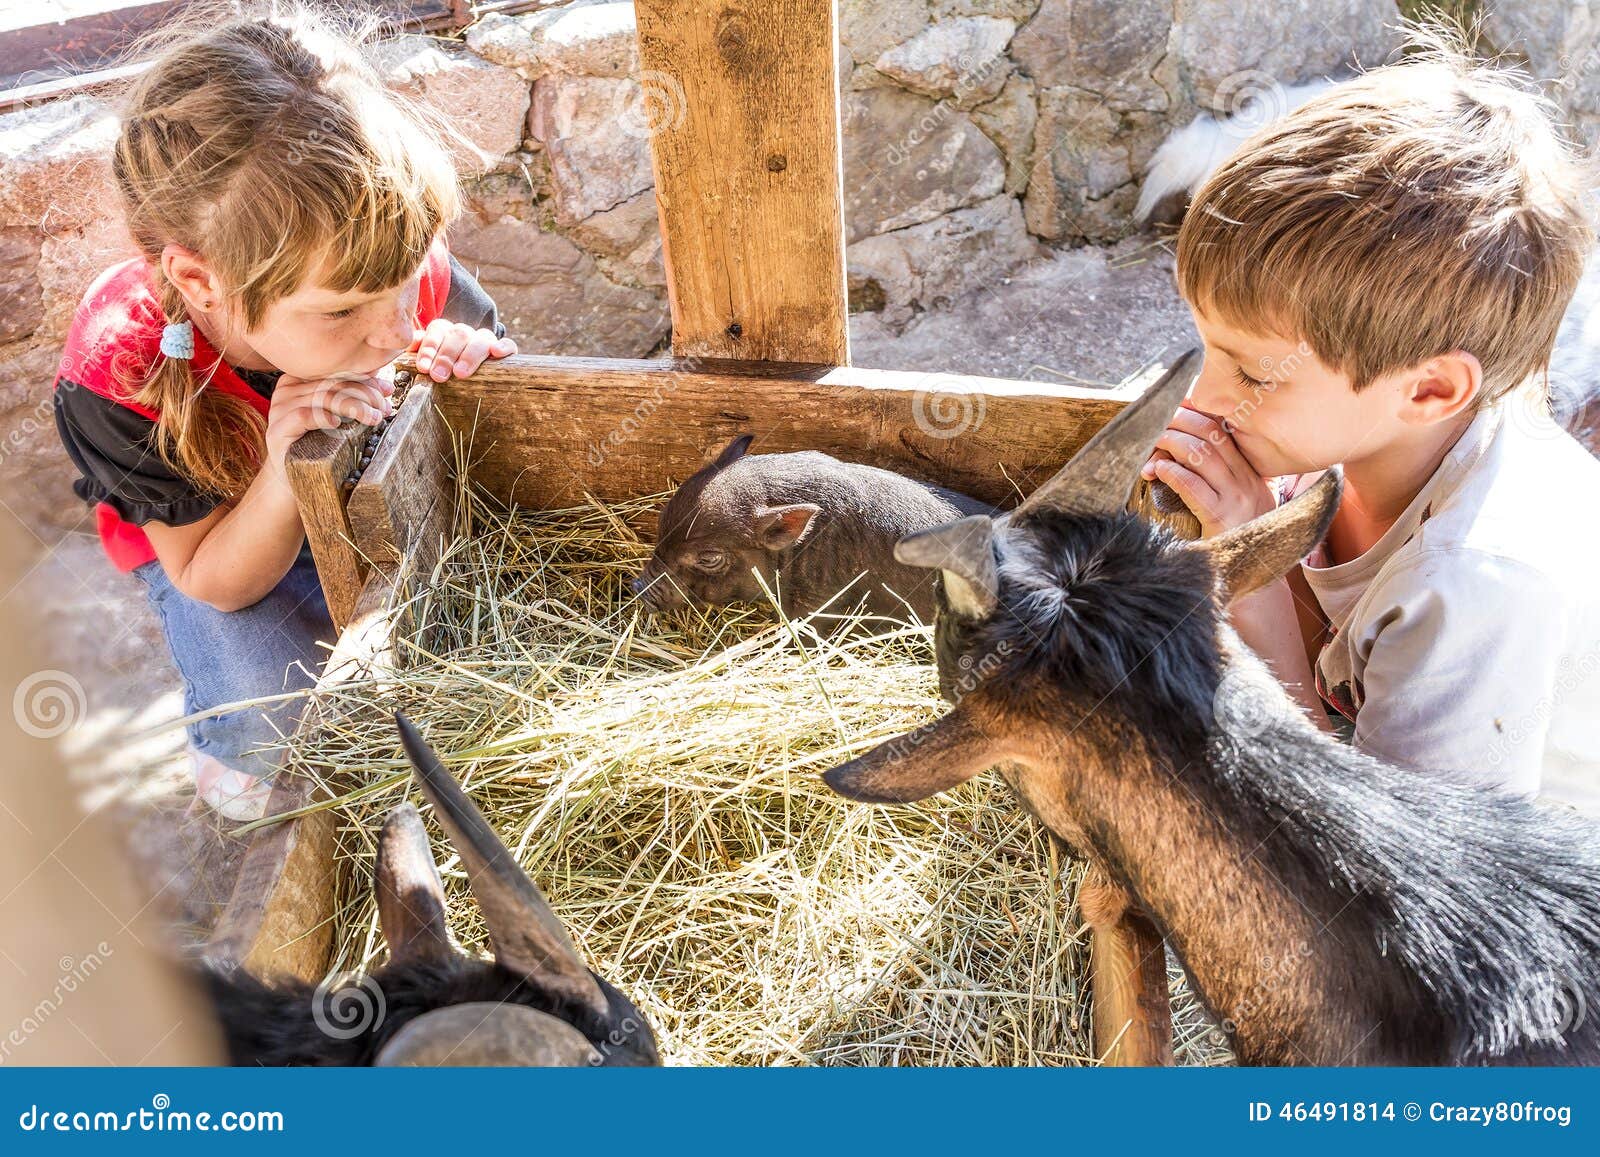 Дети ухаживают за животными. Забота детей о животных. Забота людей о домашних животных. Человек заботится о животных. Дети заботятся о животных на ферме.